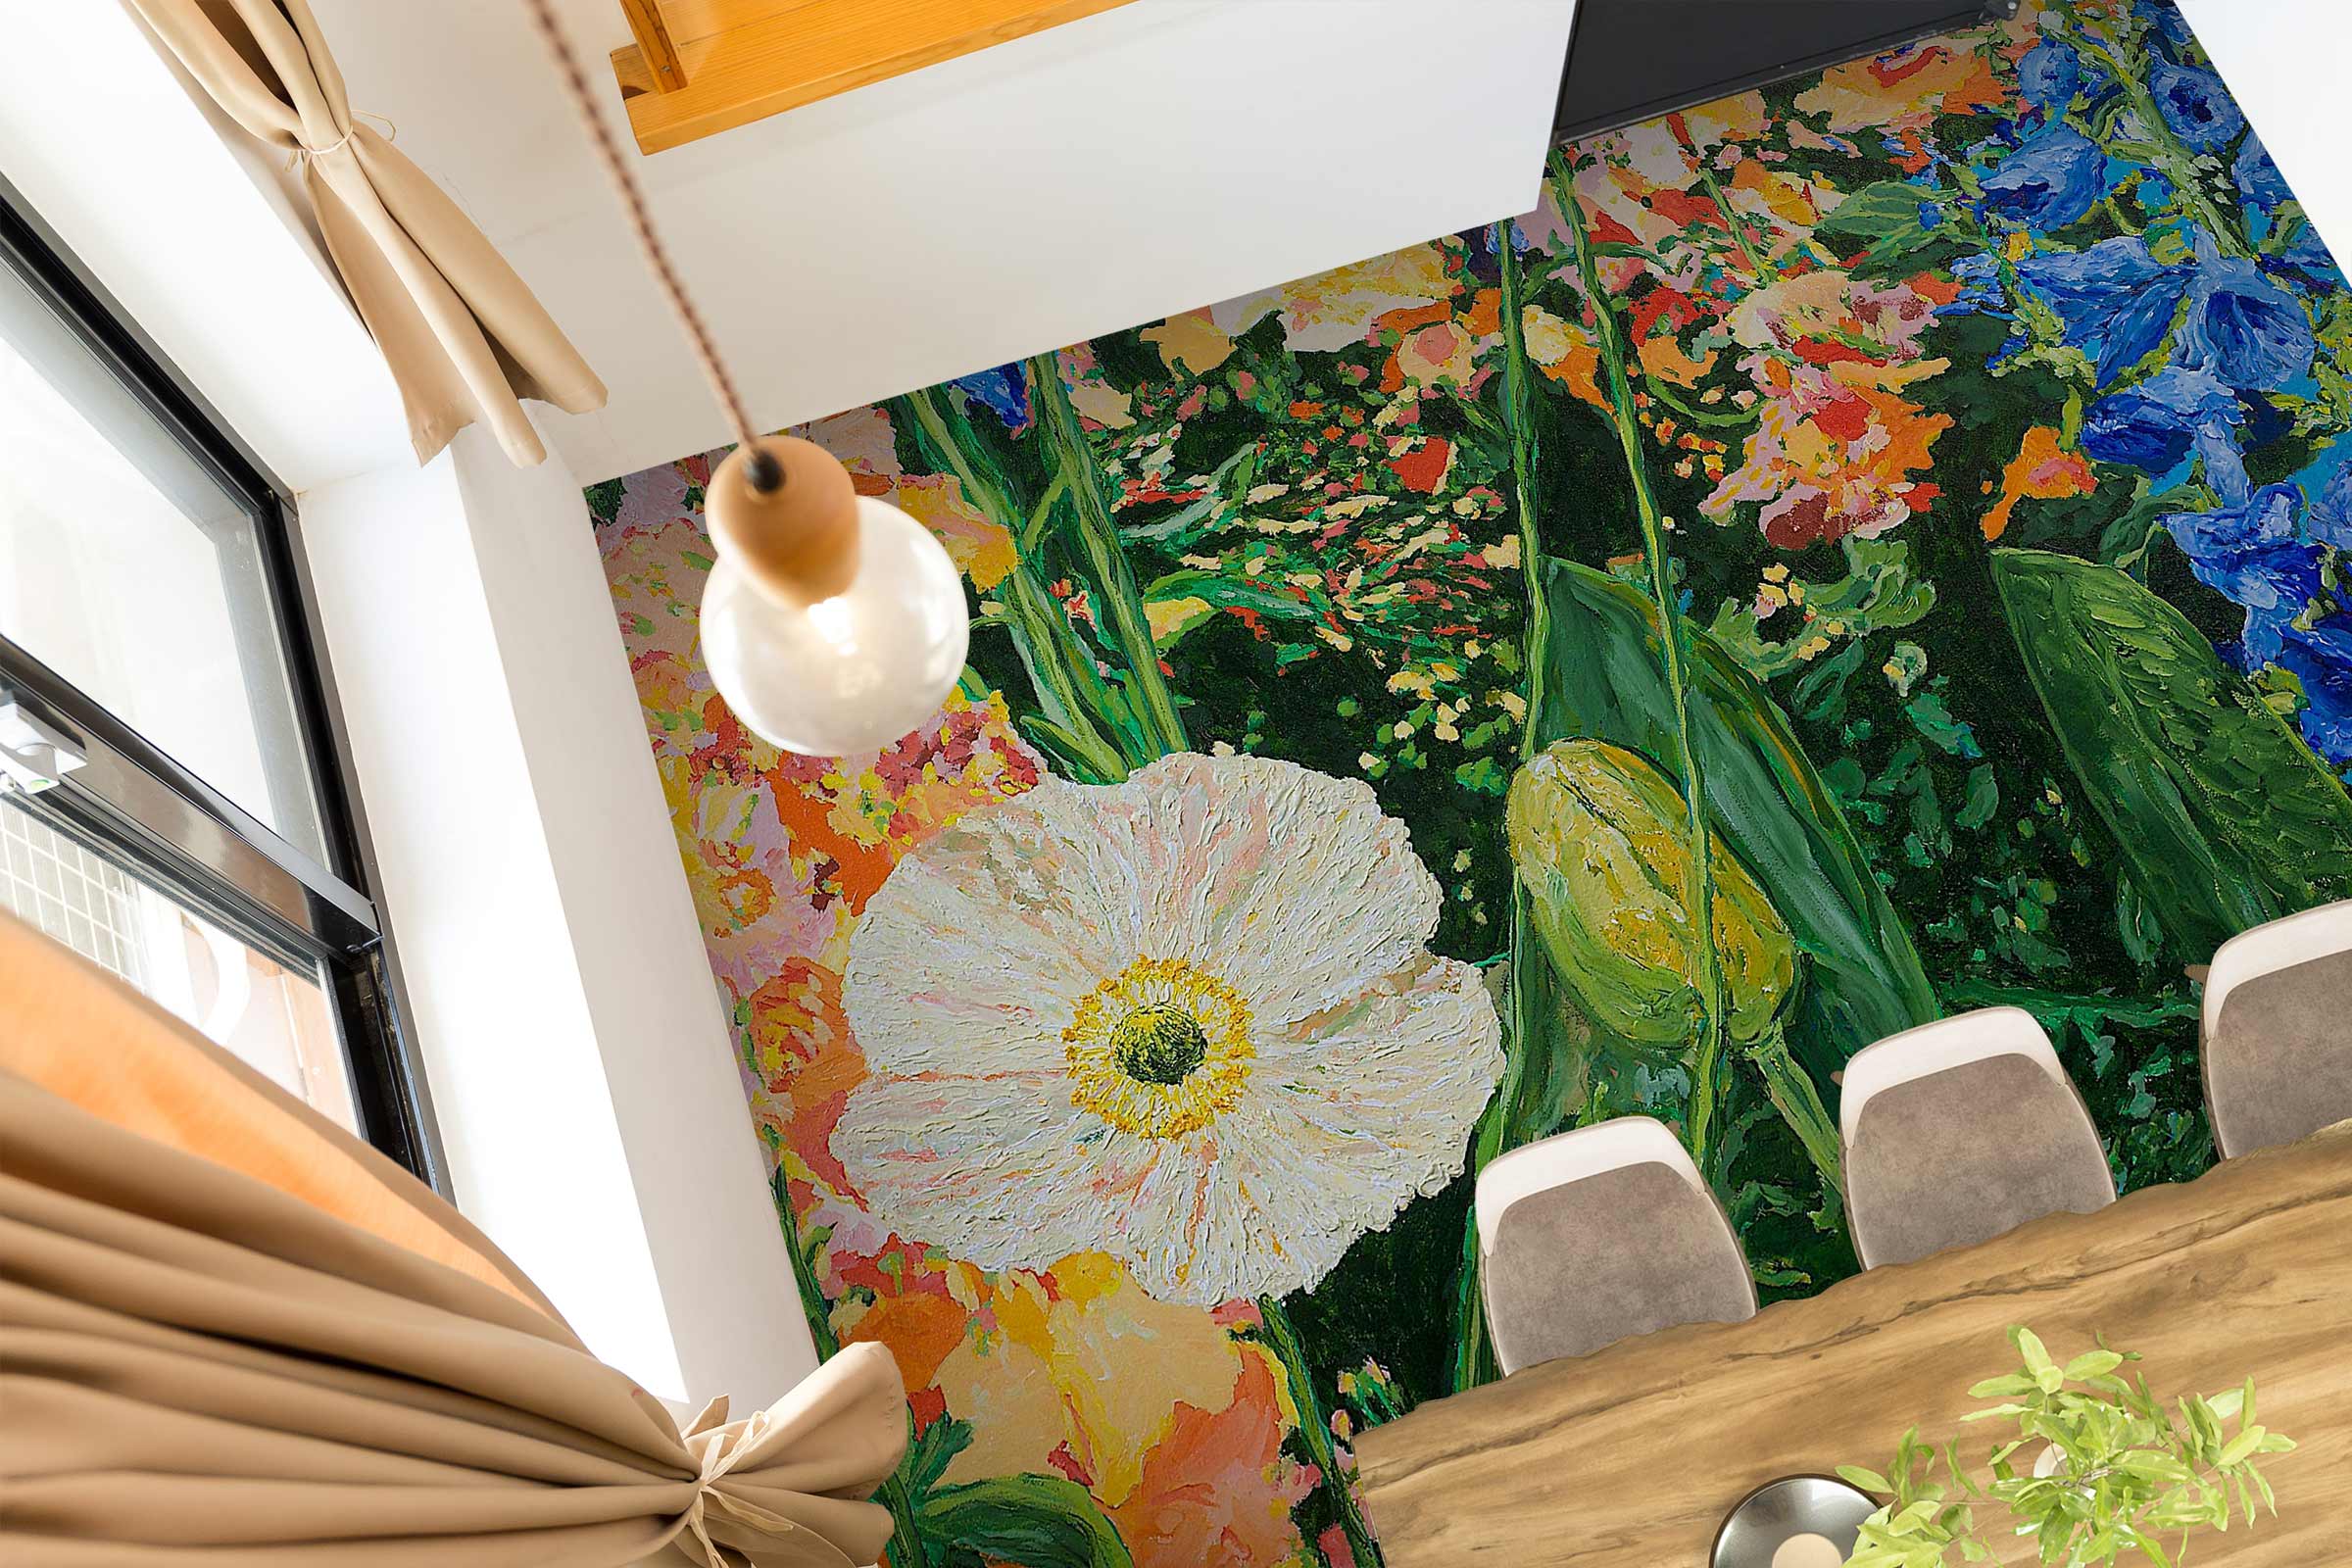 3D Colorful Flowers Painting 9565 Allan P. Friedlander Floor Mural